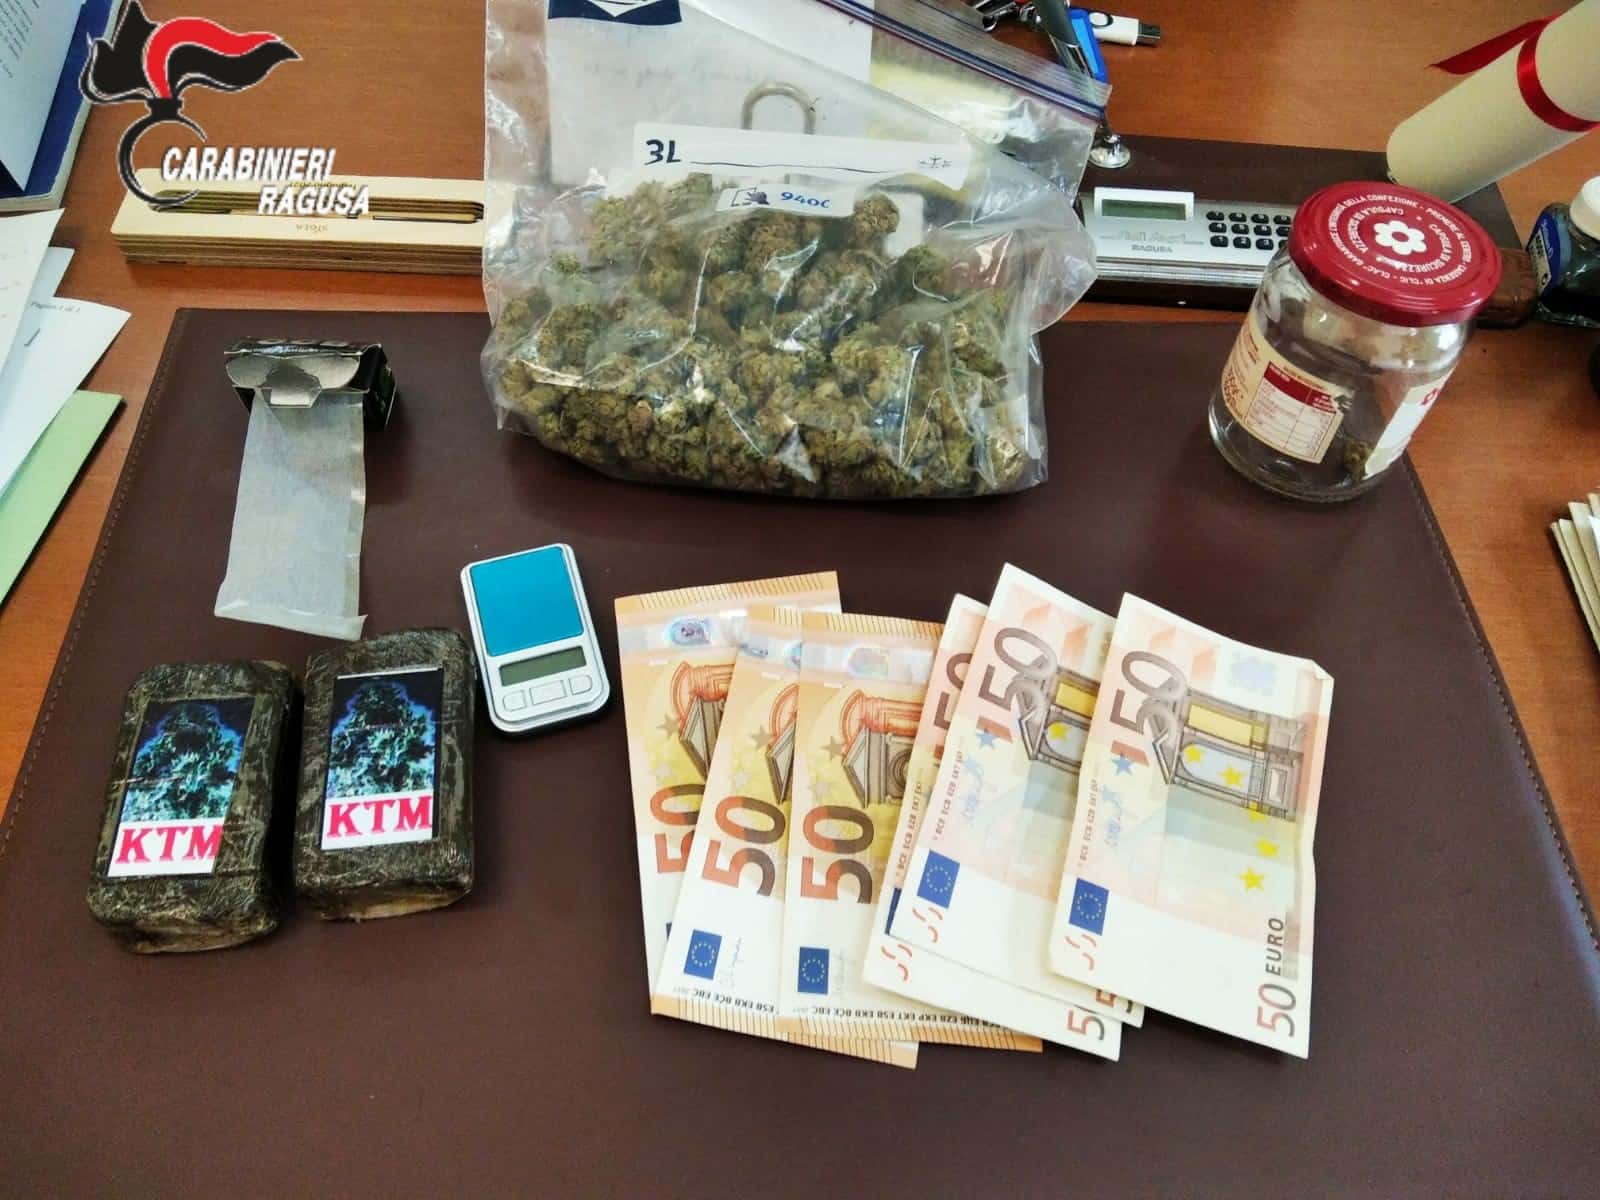 Trovati con hashish e marijuana al posto di controllo, arrestati dai carabinieri